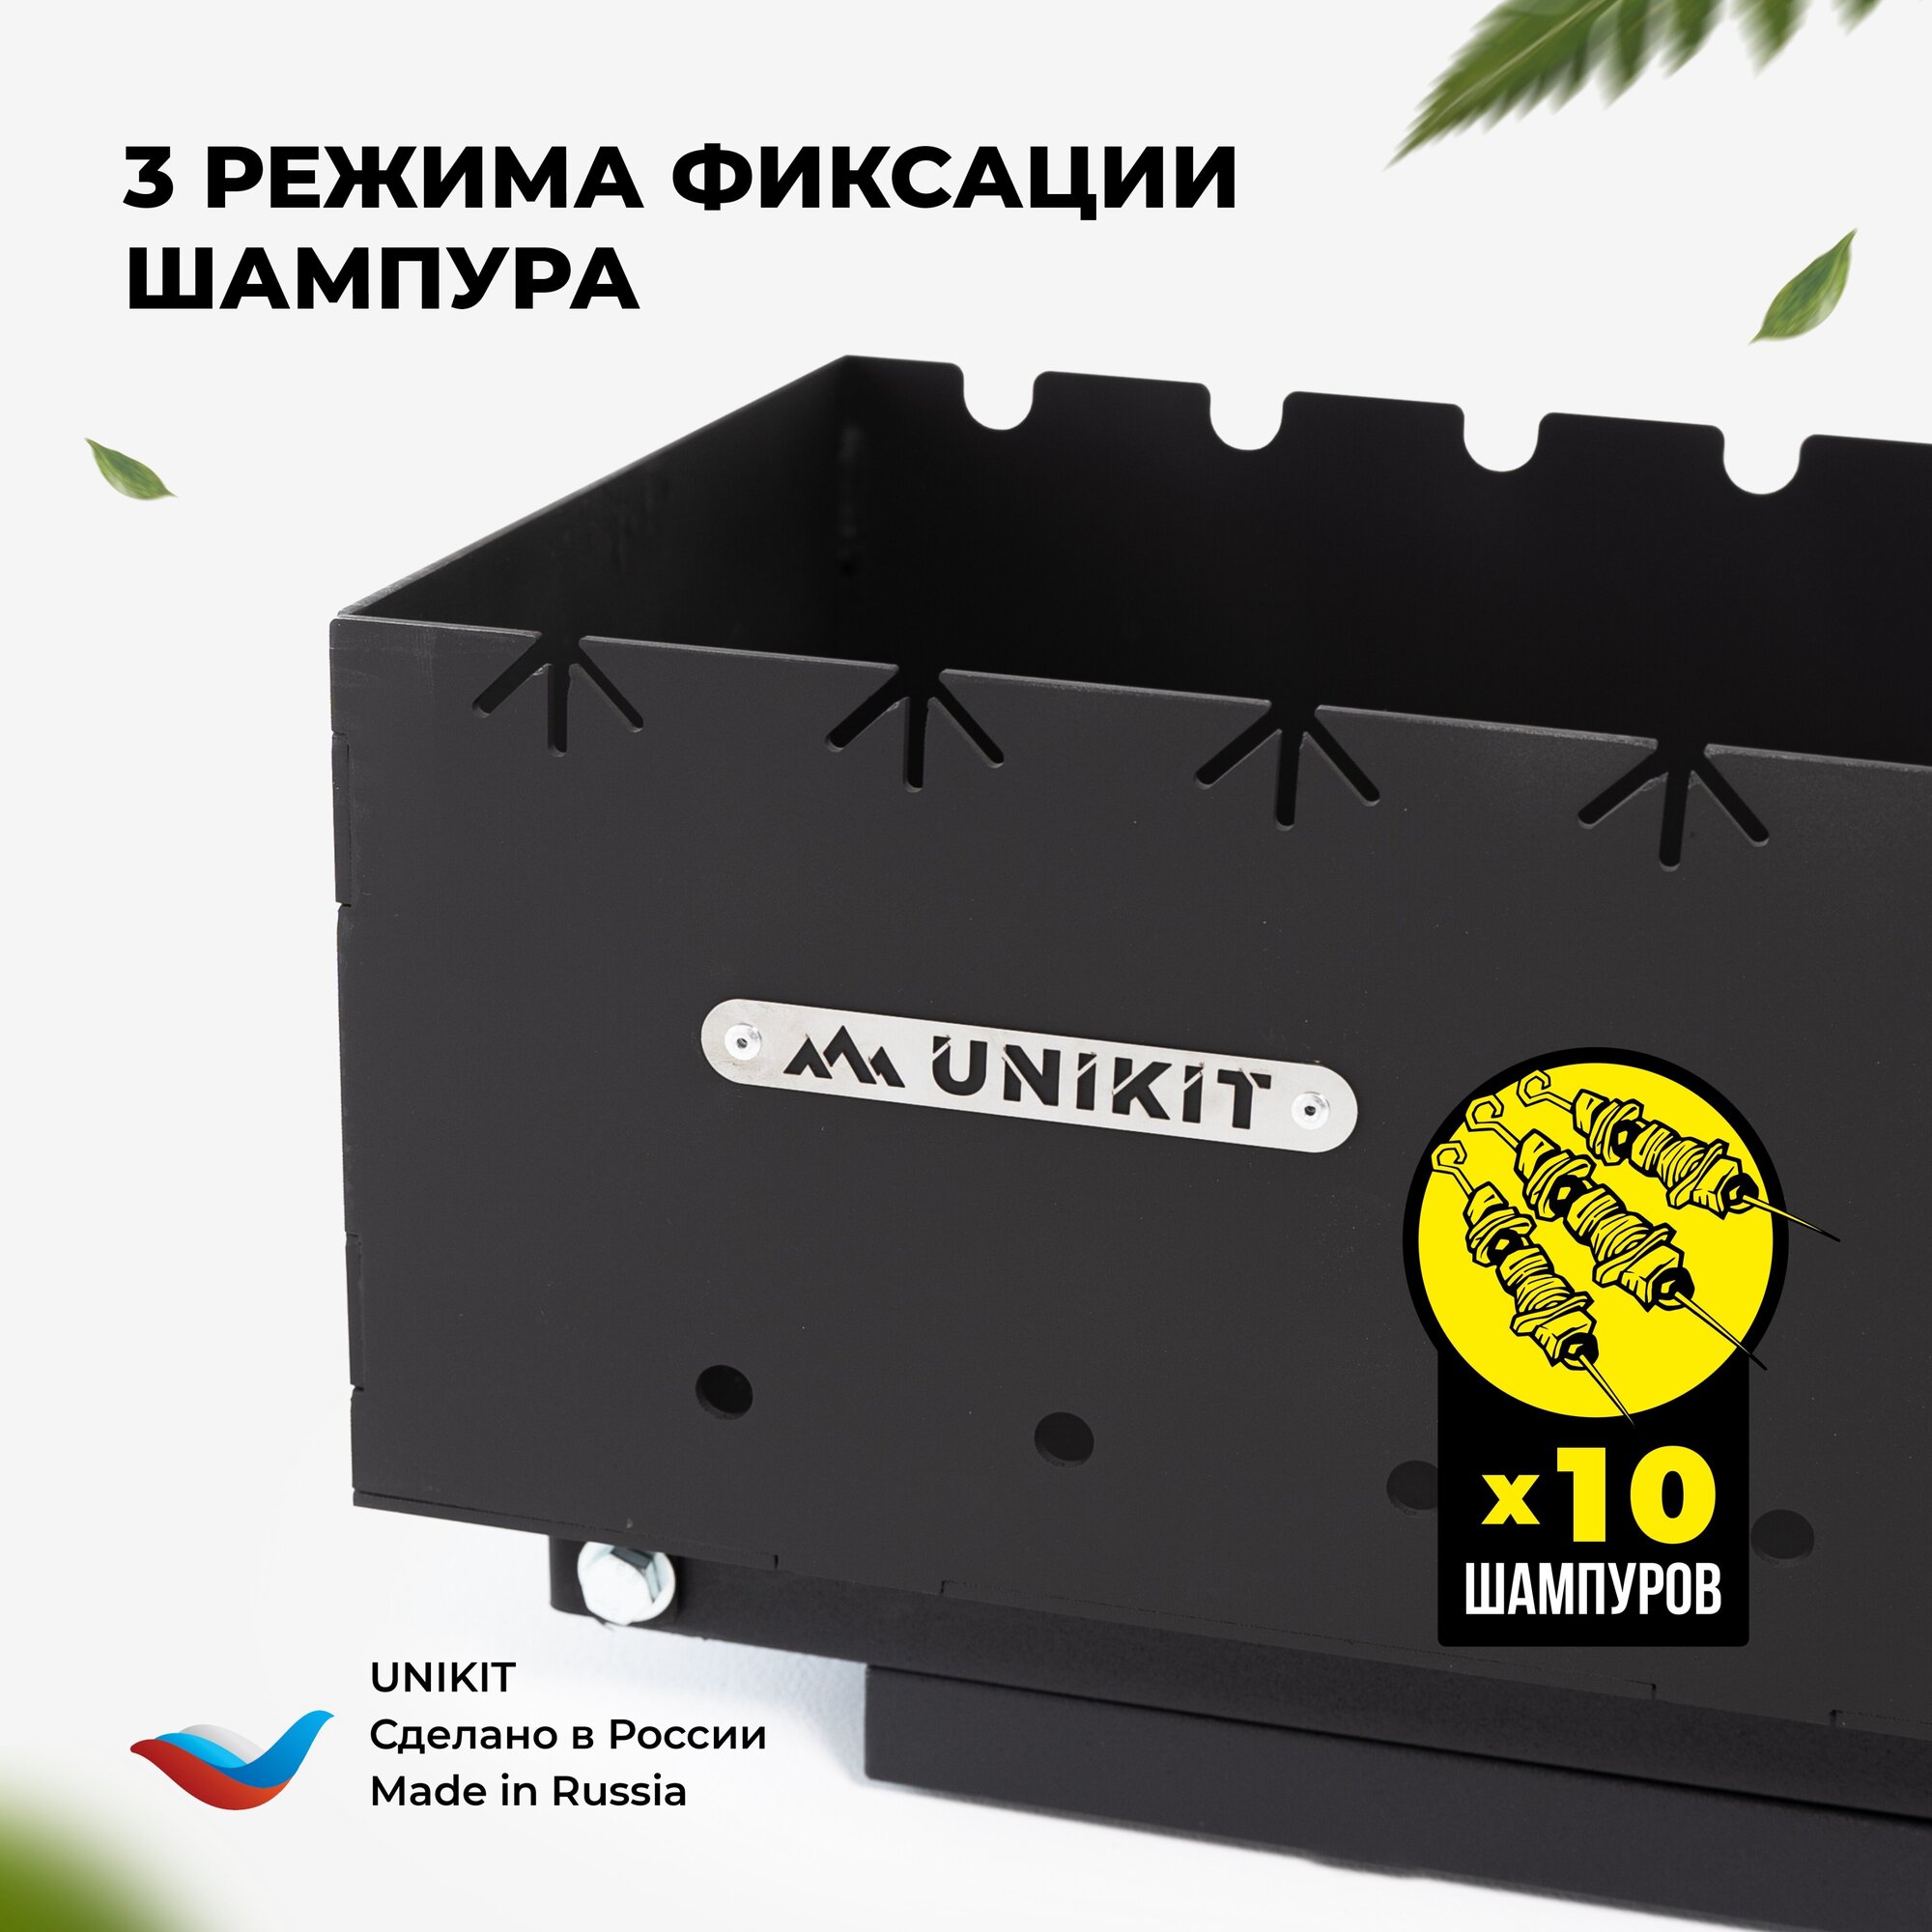 Unikit Мангал складной 3 мм, 600 UN-3/600МC